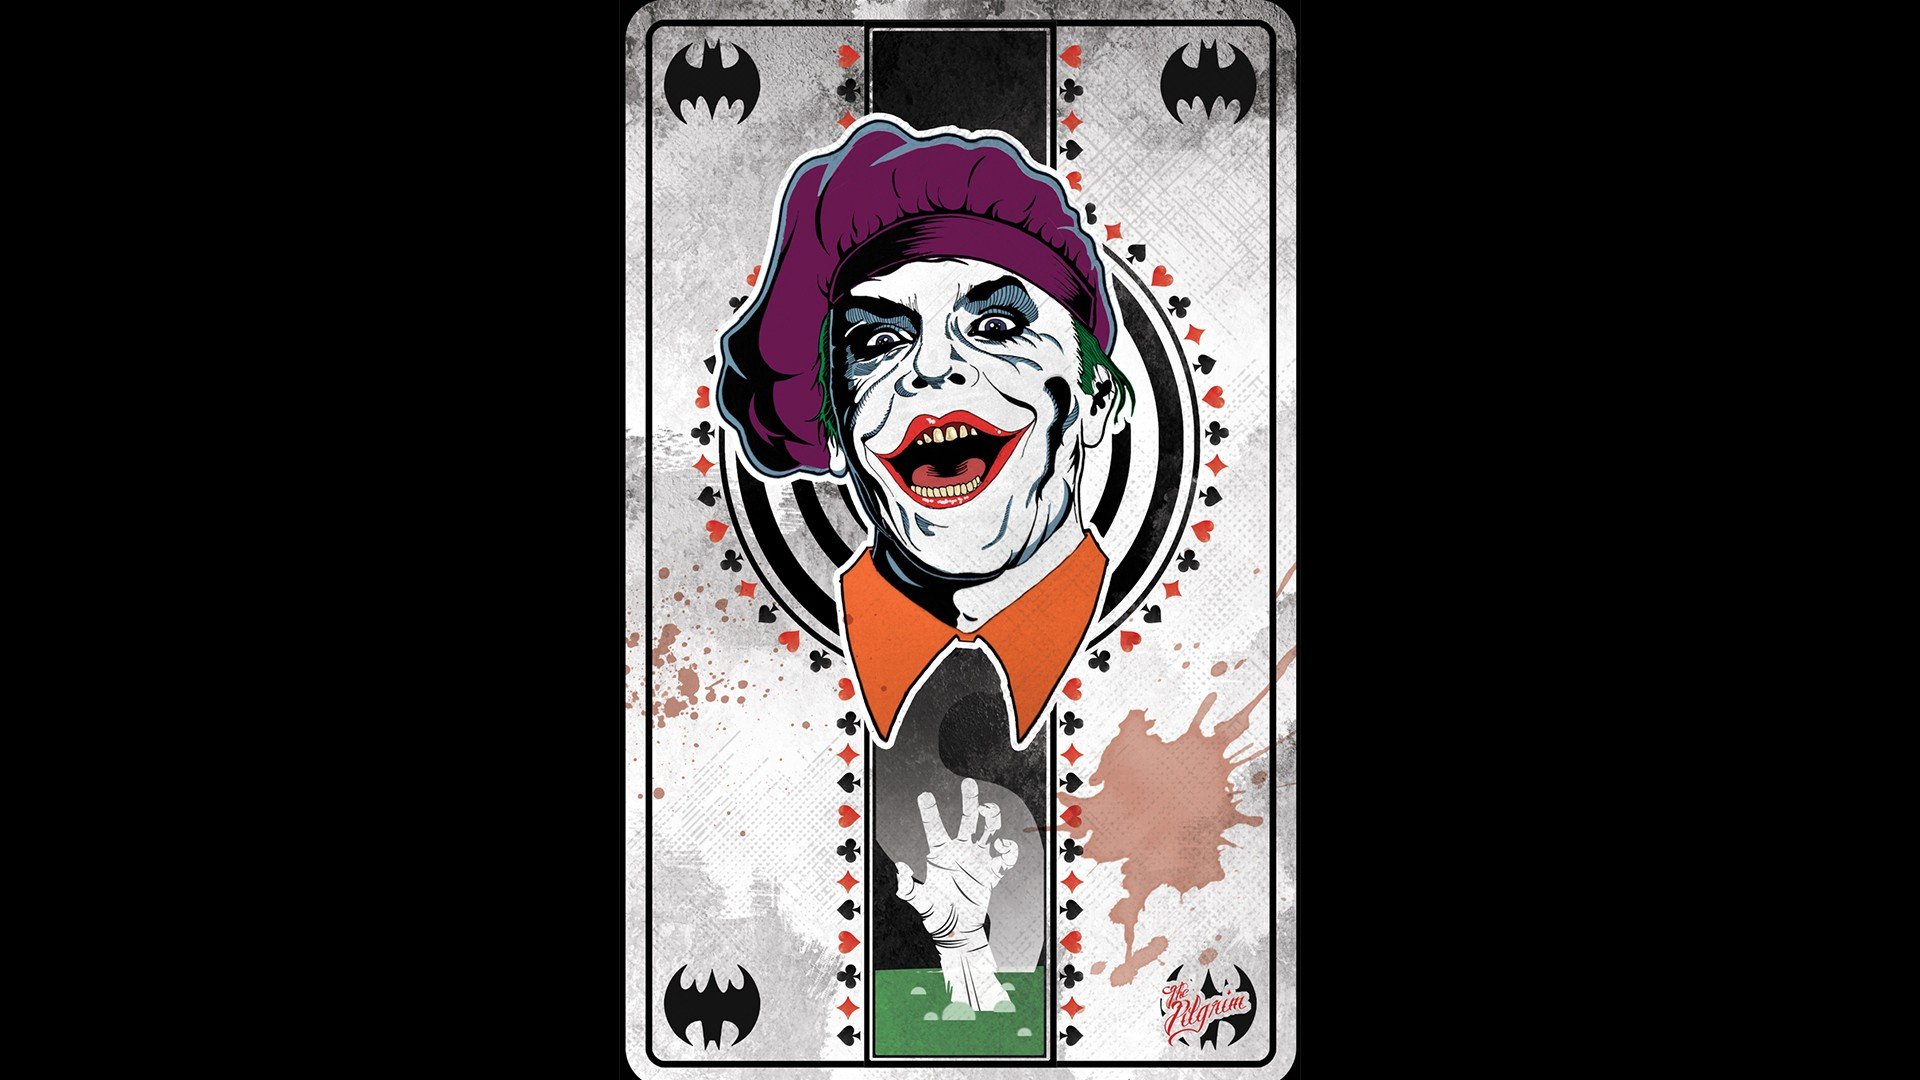 Joker Movie Wallpaper 4k For Mobile